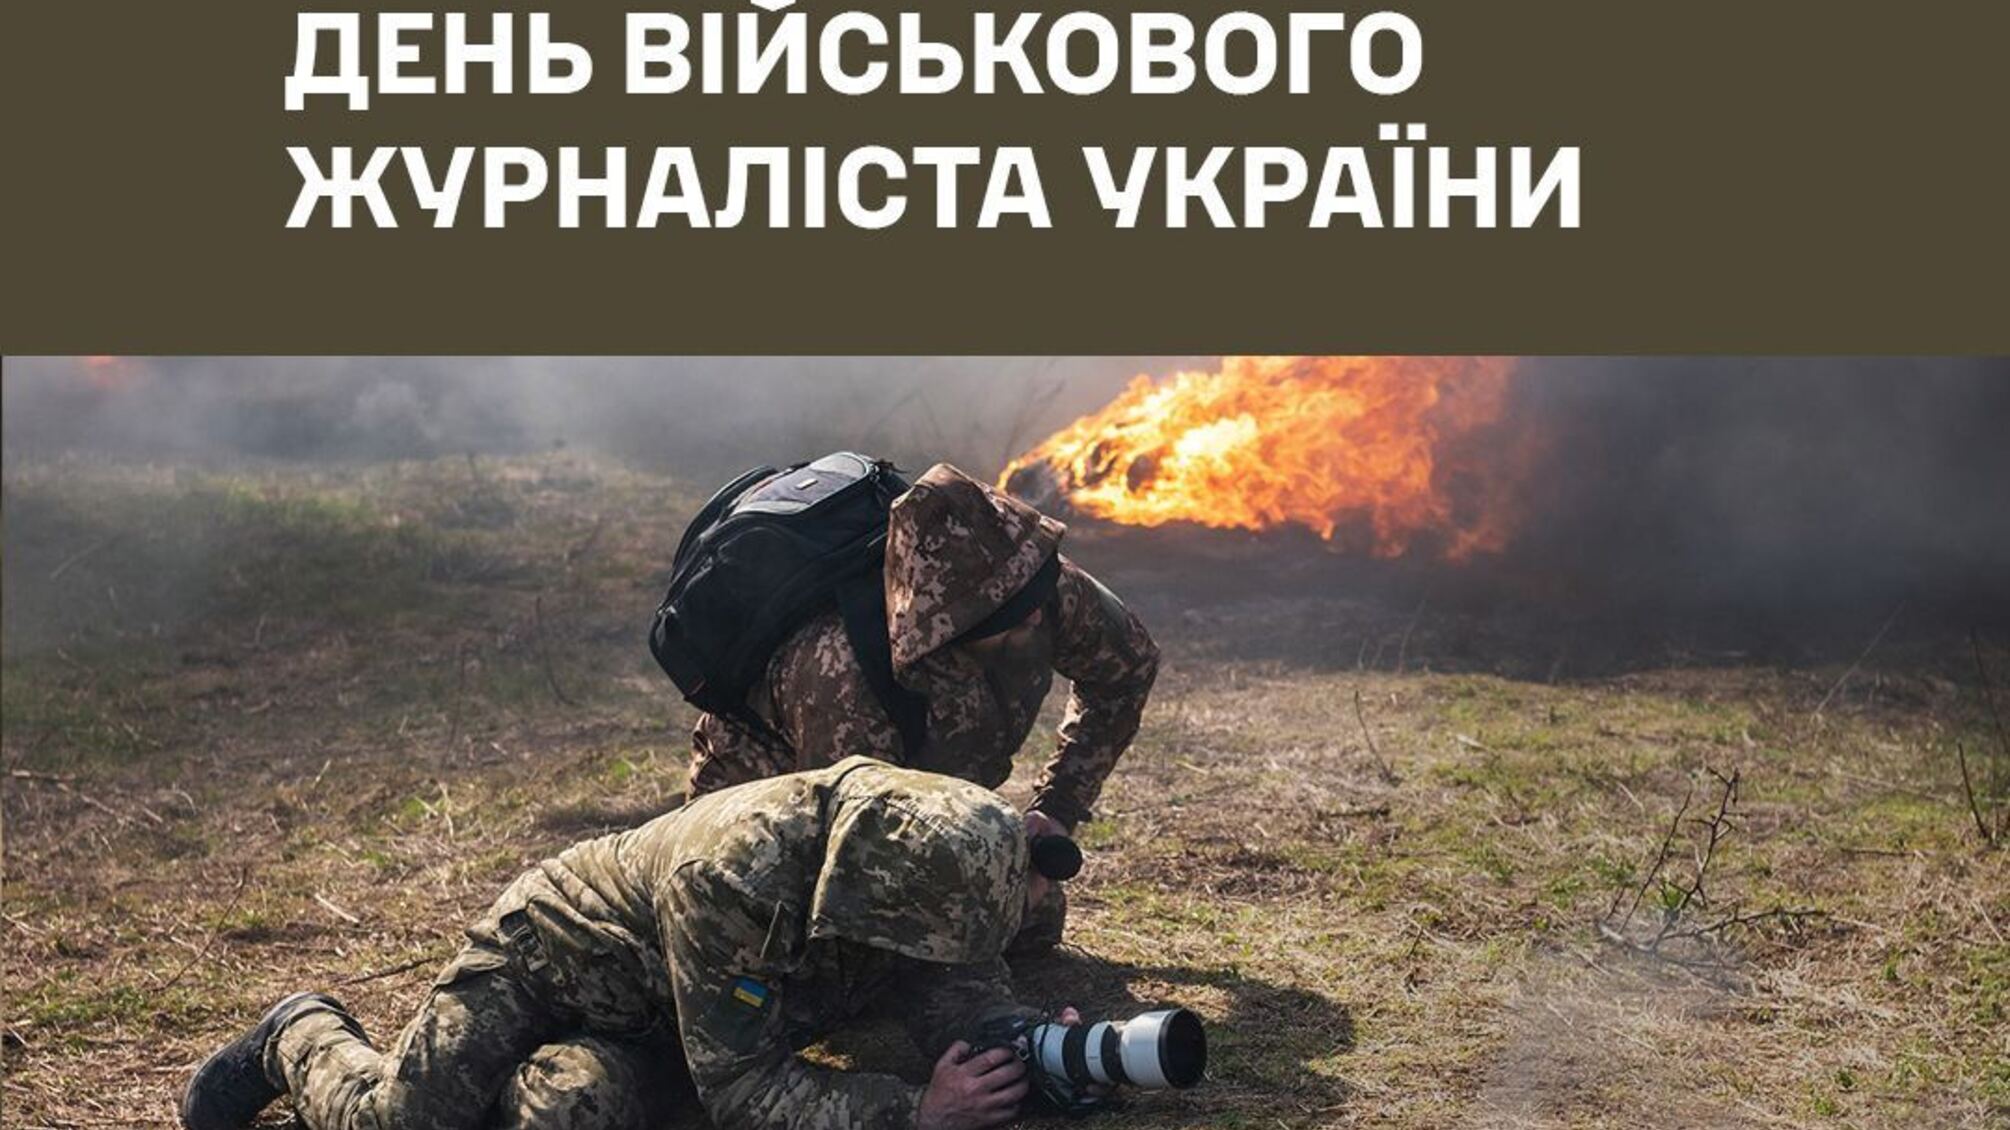 'Делают огромный вклад в информационную борьбу': генерал-лейтенант Наев поздравил военных журналистов